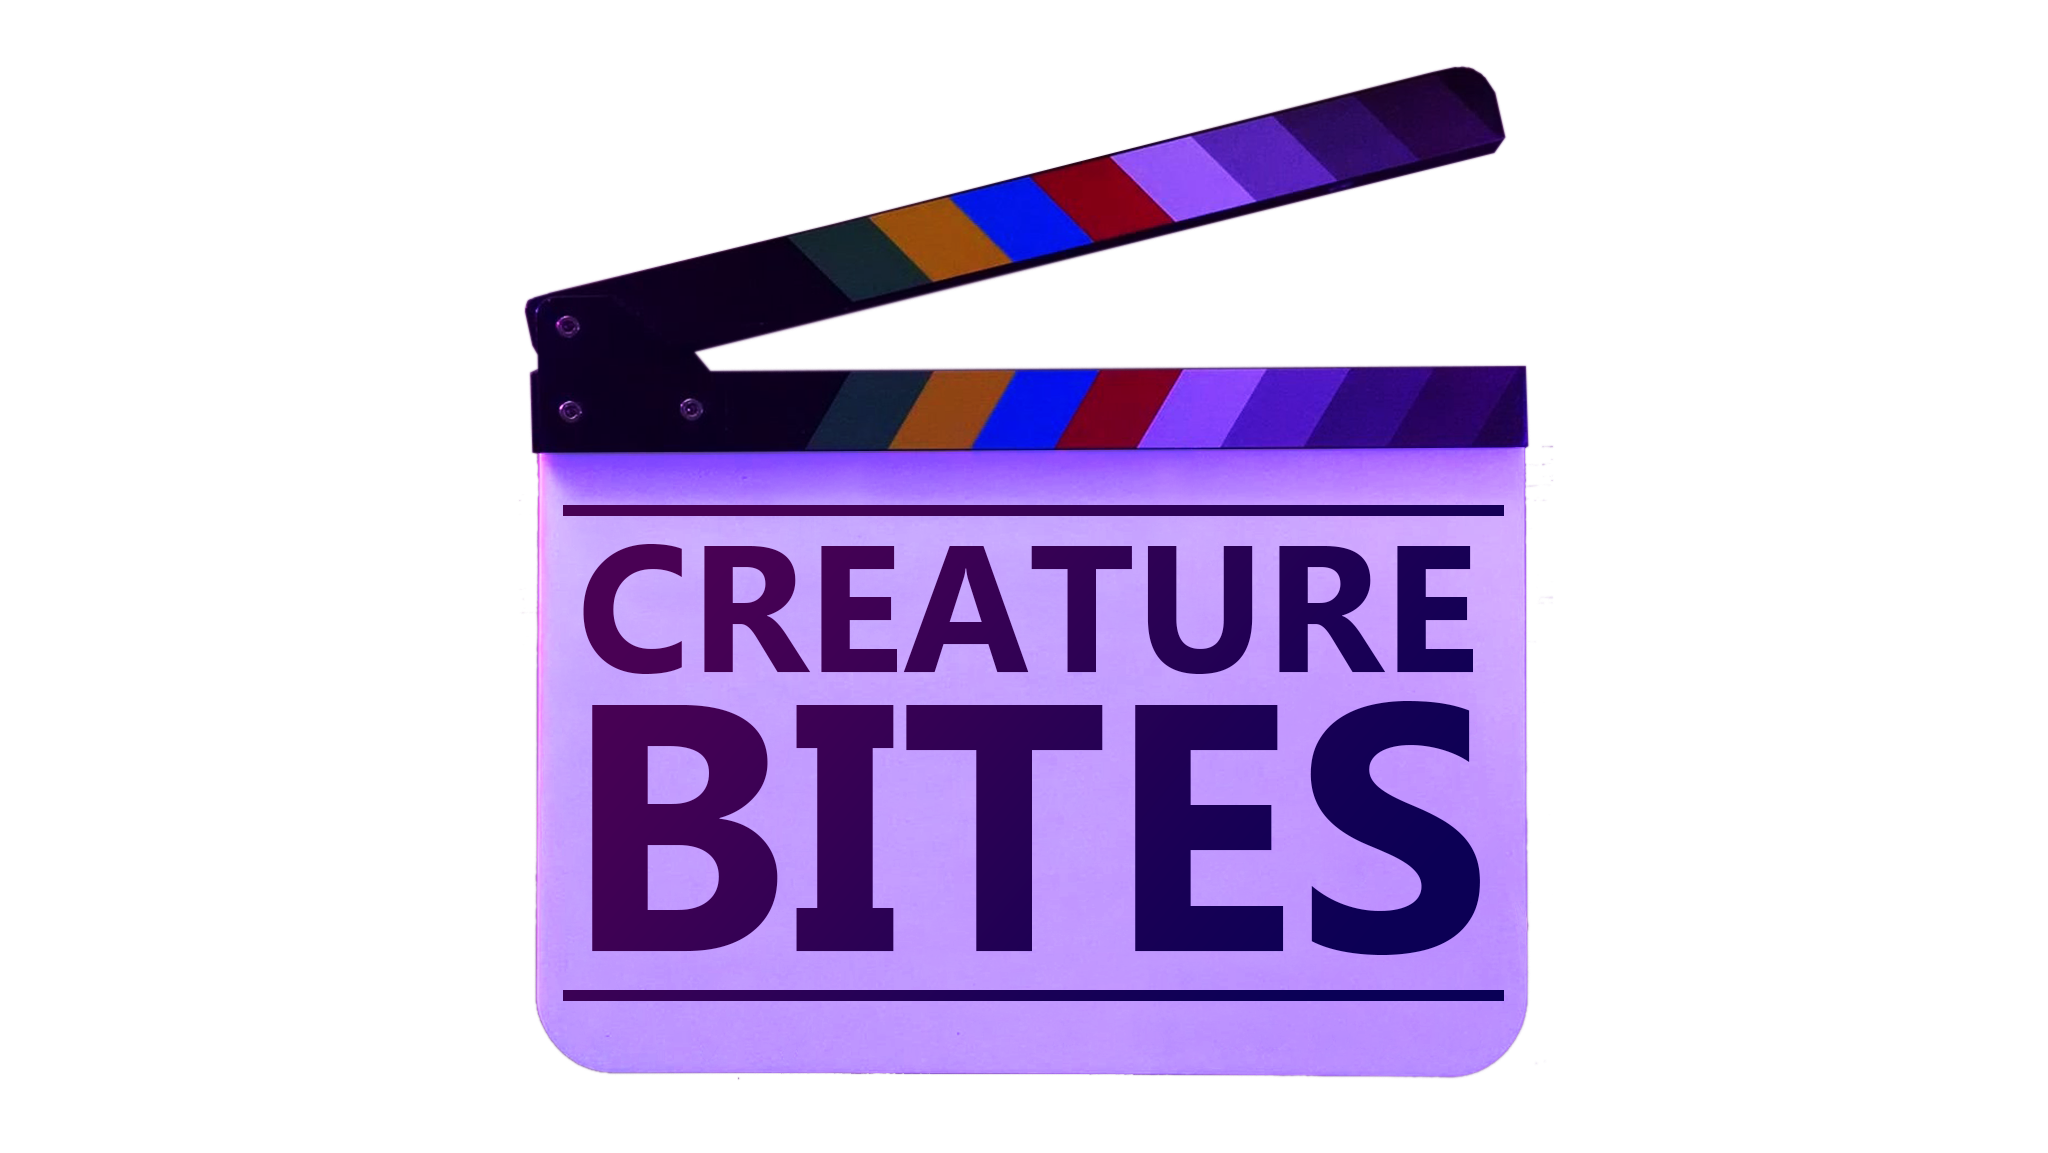 Creature Bites